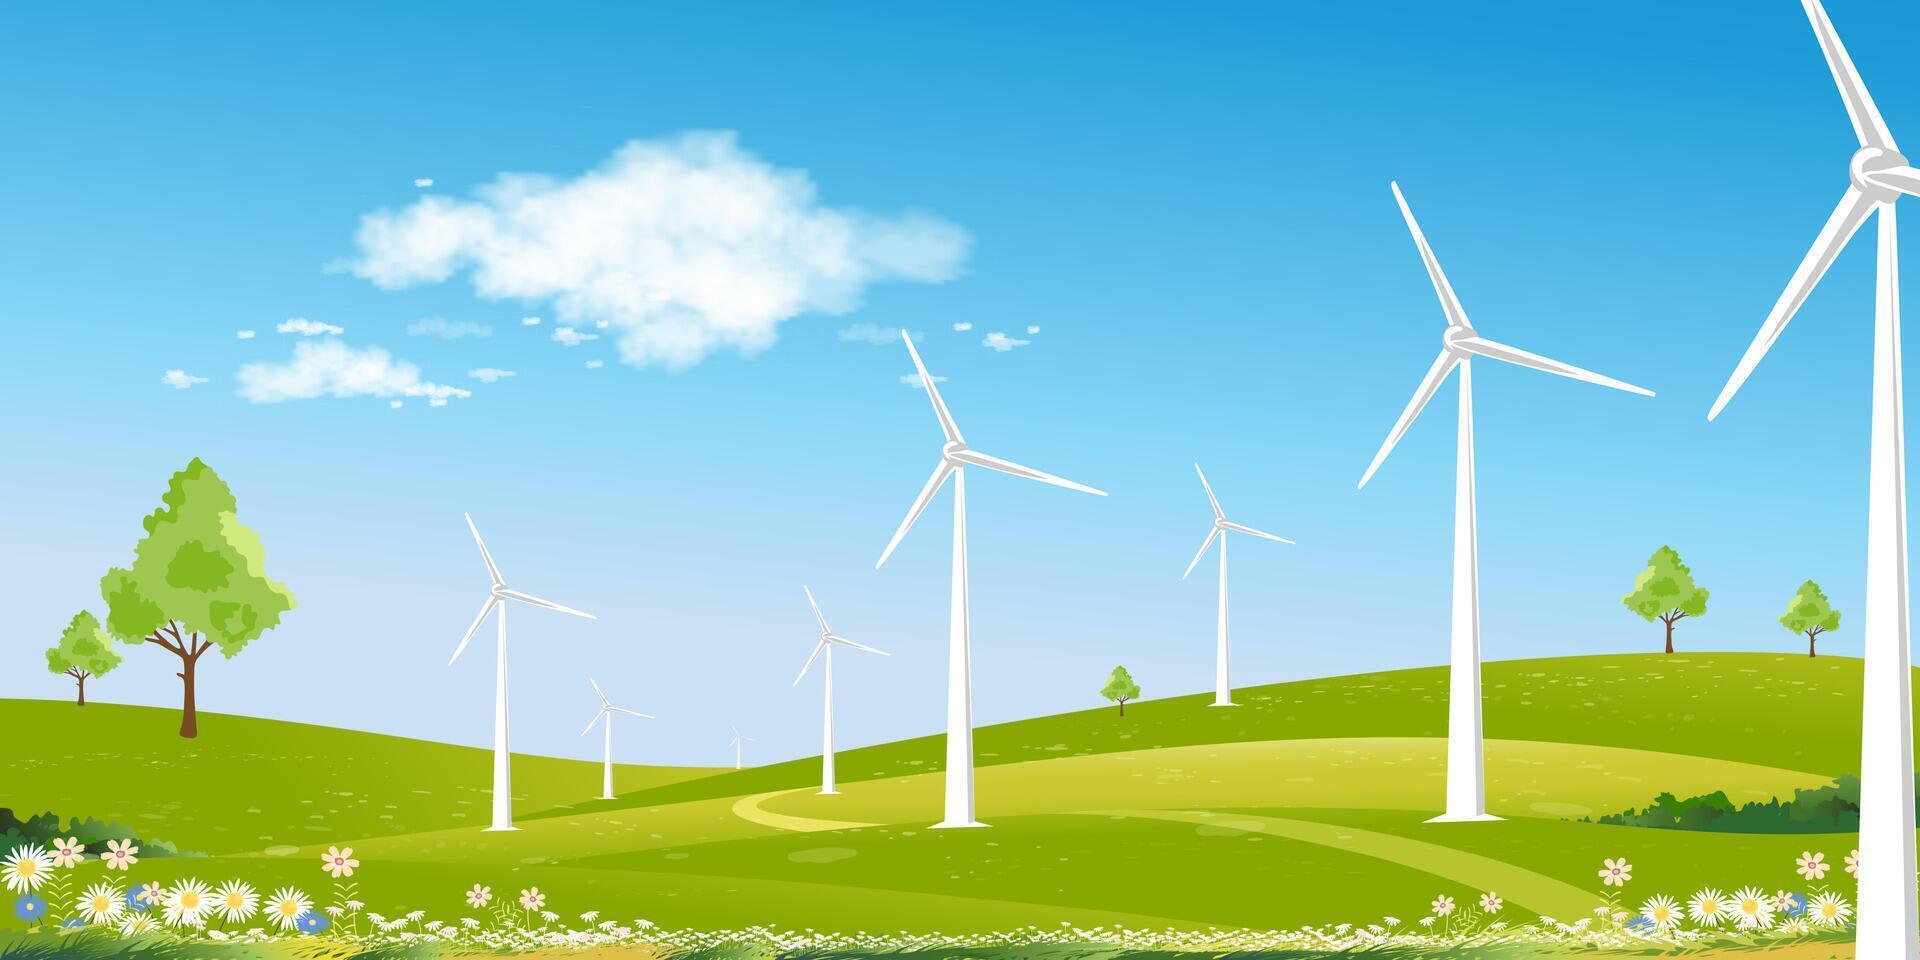 ambientale sfondo, primavera paesaggio verde campo con mulino a vento su montagna, blu cielo, nuvola, vettore rurale con solare pannello vento turbine installato come rinnovabile stazione energia fonti per elettricità